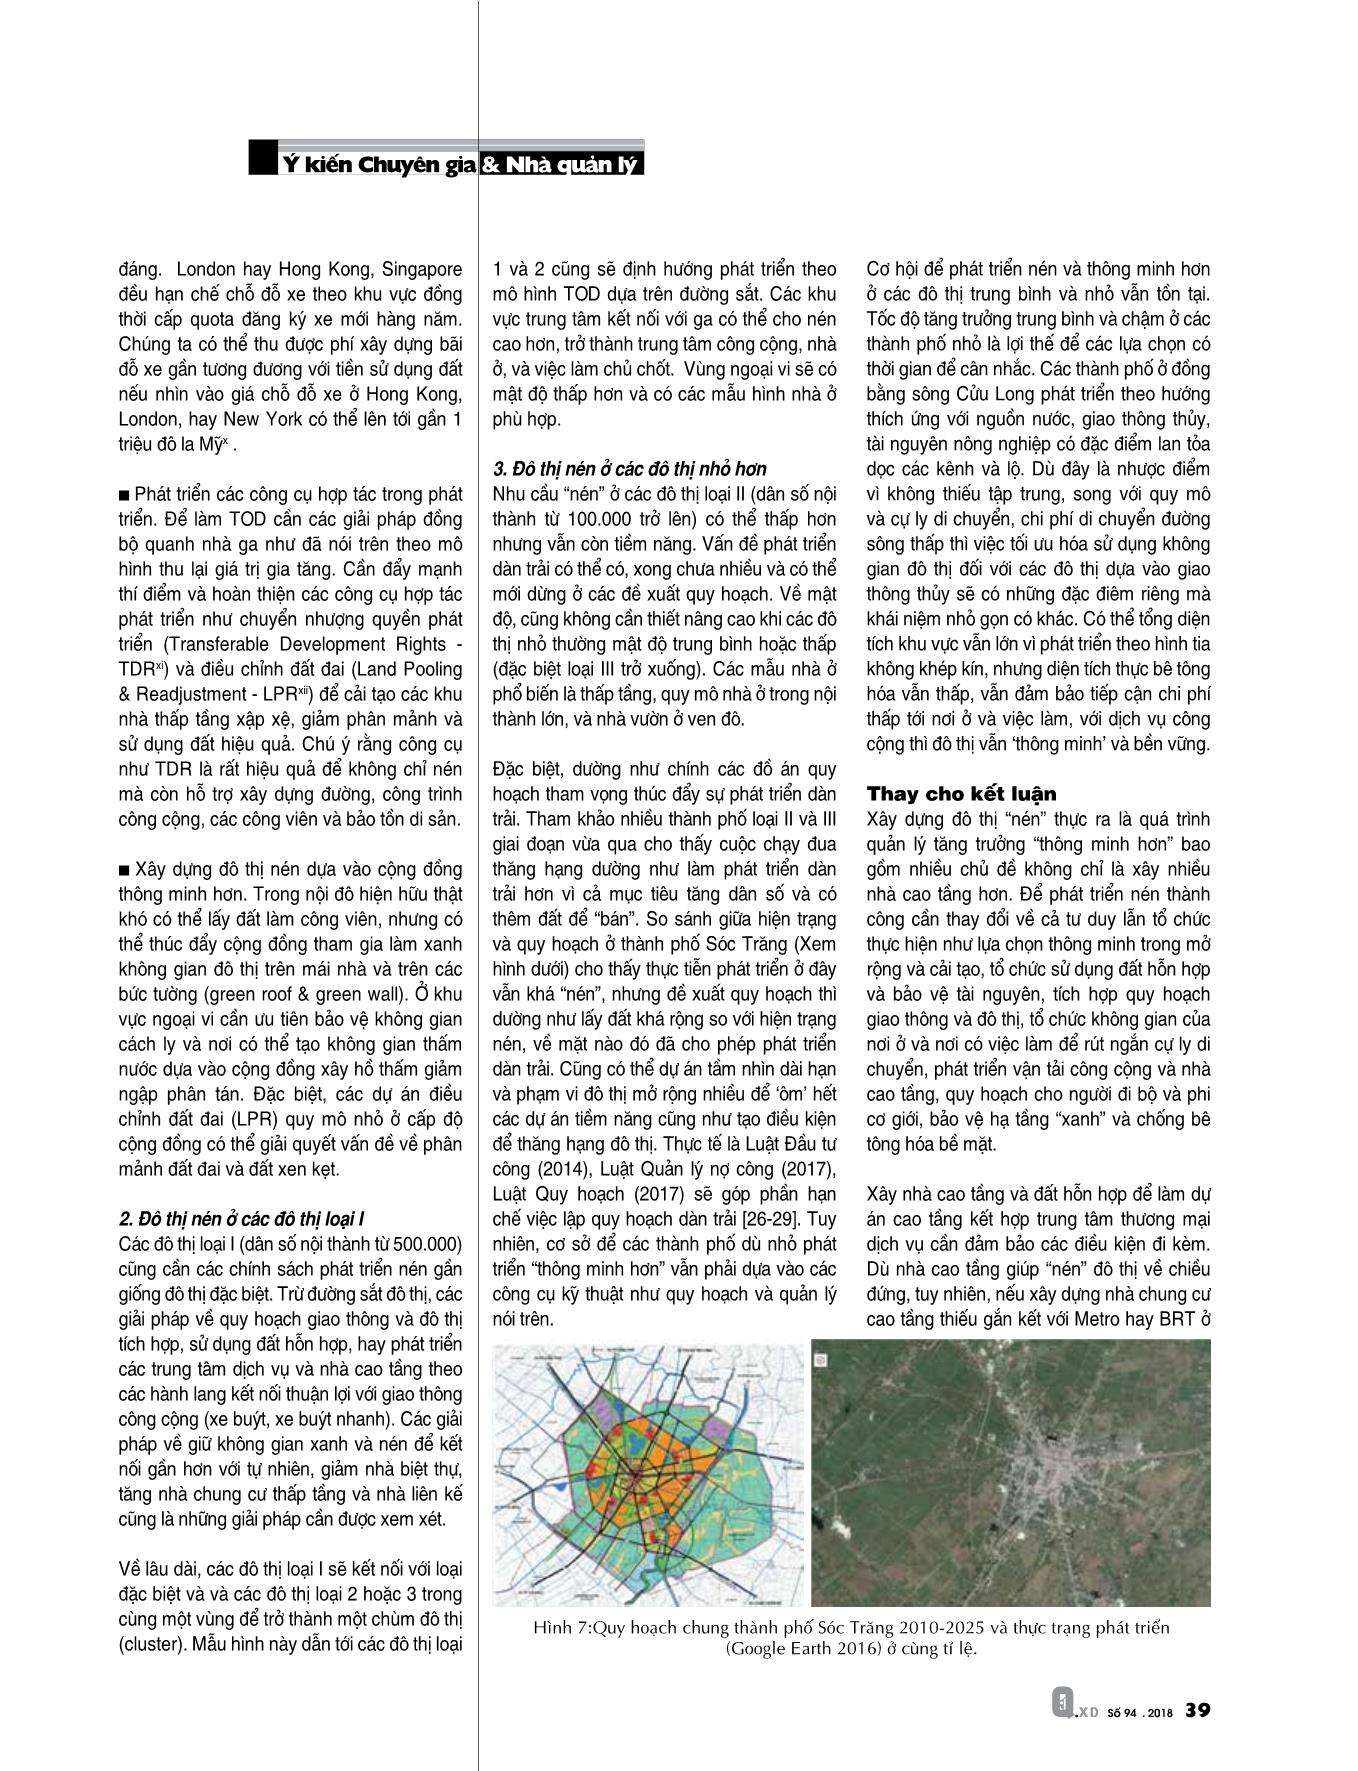 Thảo luận về phát triển đô thị “nén” ở Việt Nam trang 6